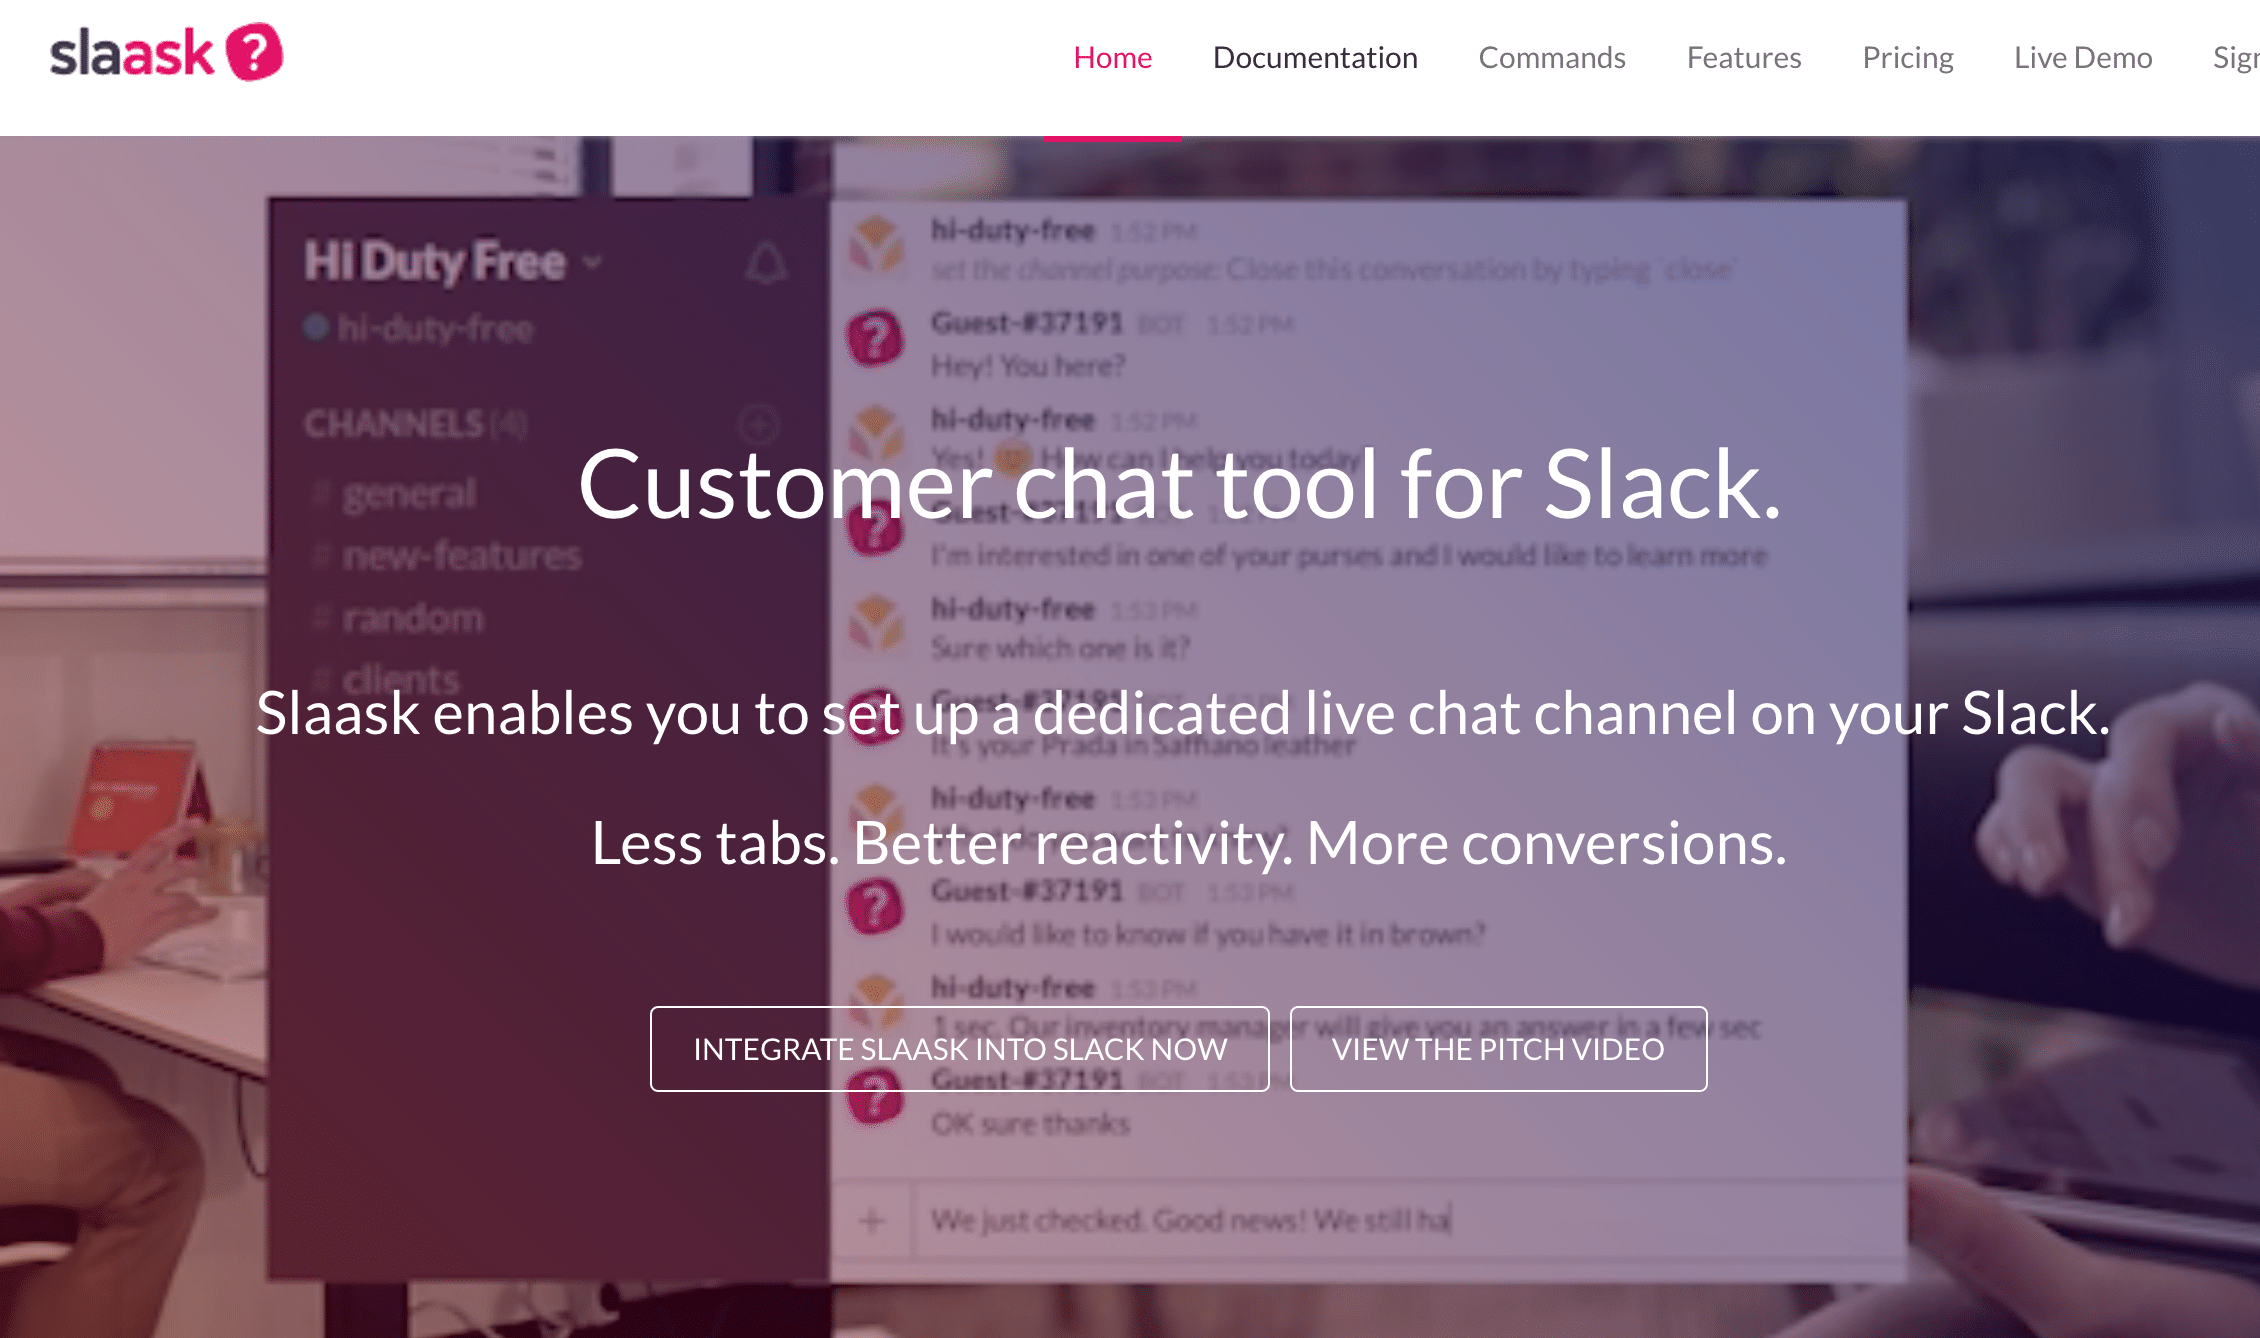 Slaask_-_Customer_chat_tool_for_Slack_